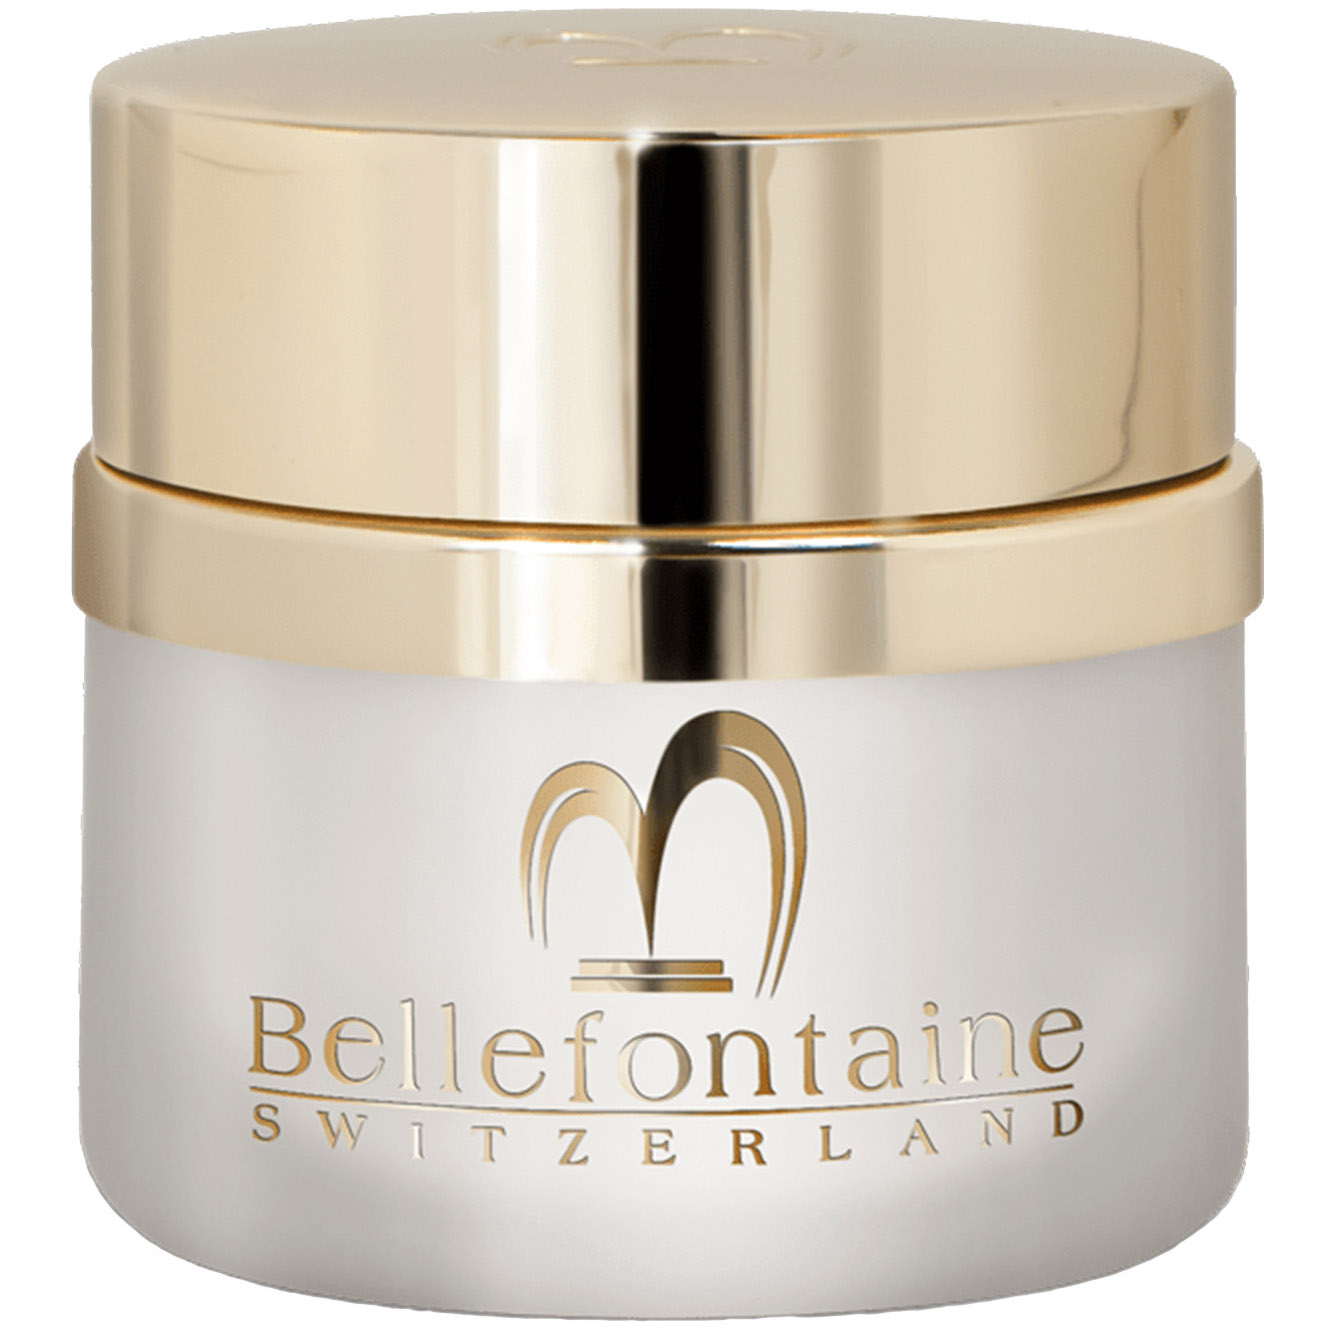 Омолаживающий ночной крем для лица Bellefontaine Nutri-Plus, для сухой кожи, 50 мл - фото 1